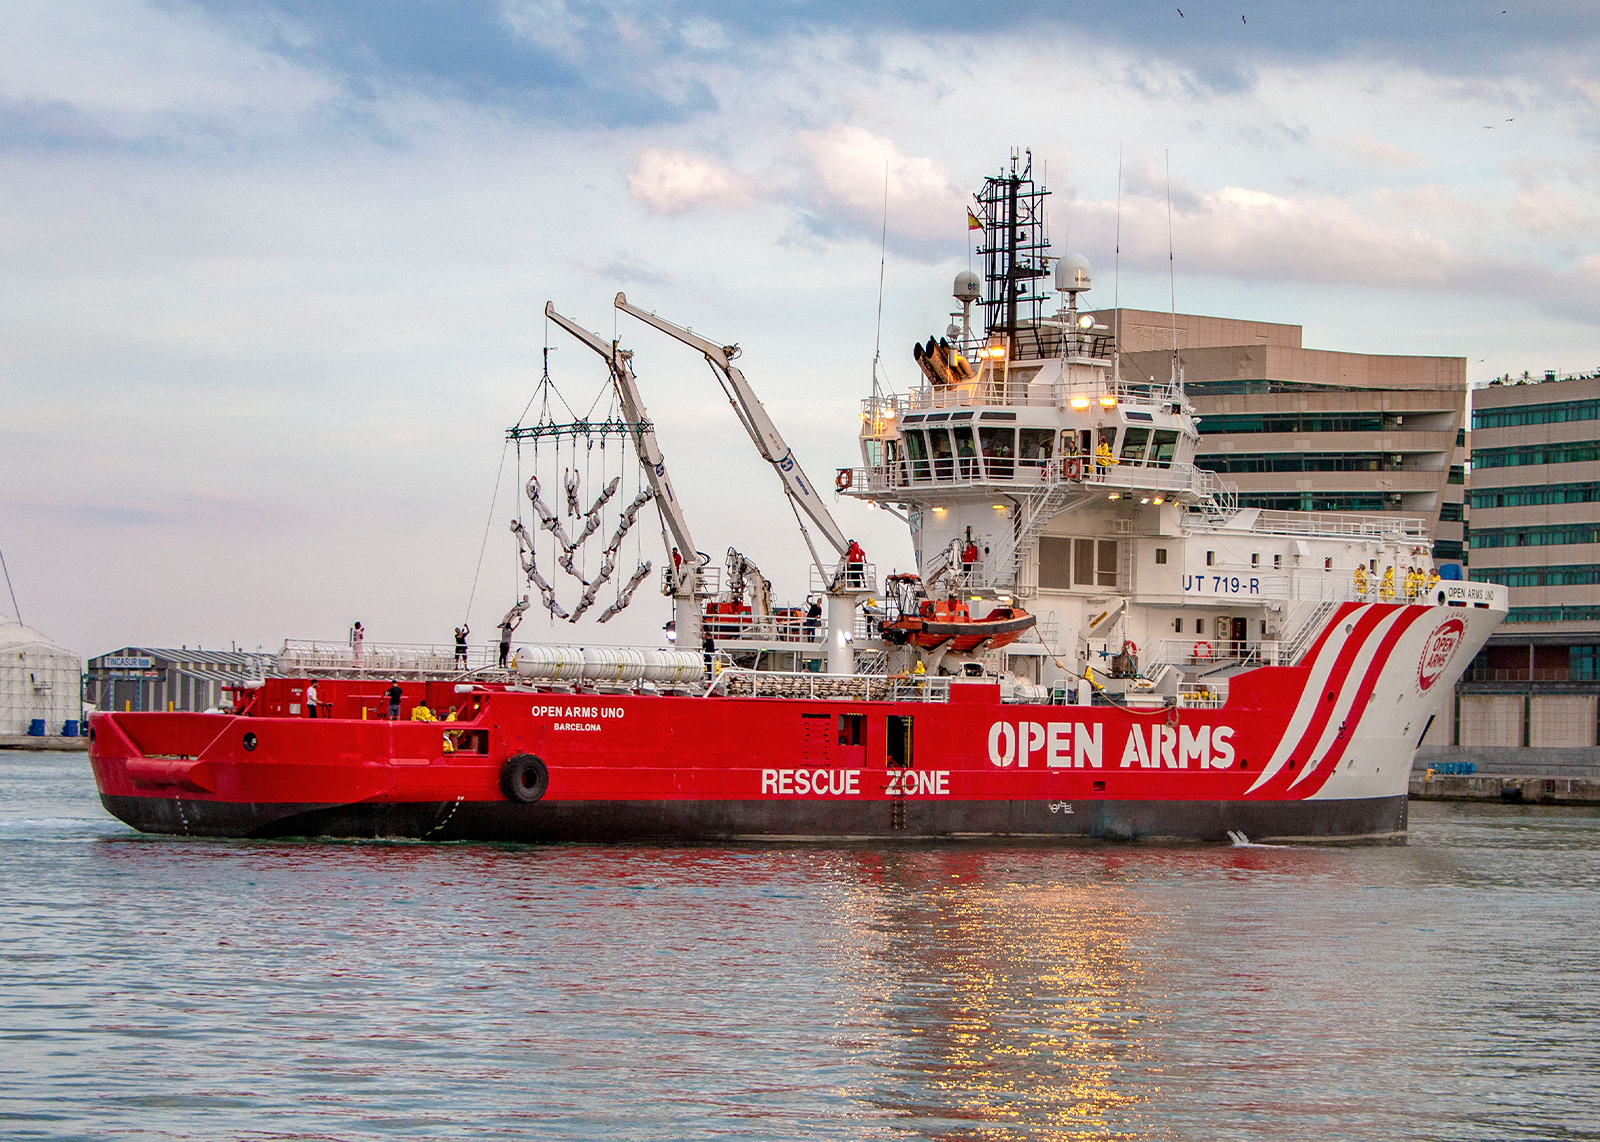 Presentació oficial de l’Open Arms Uno: el vaixell humanitari